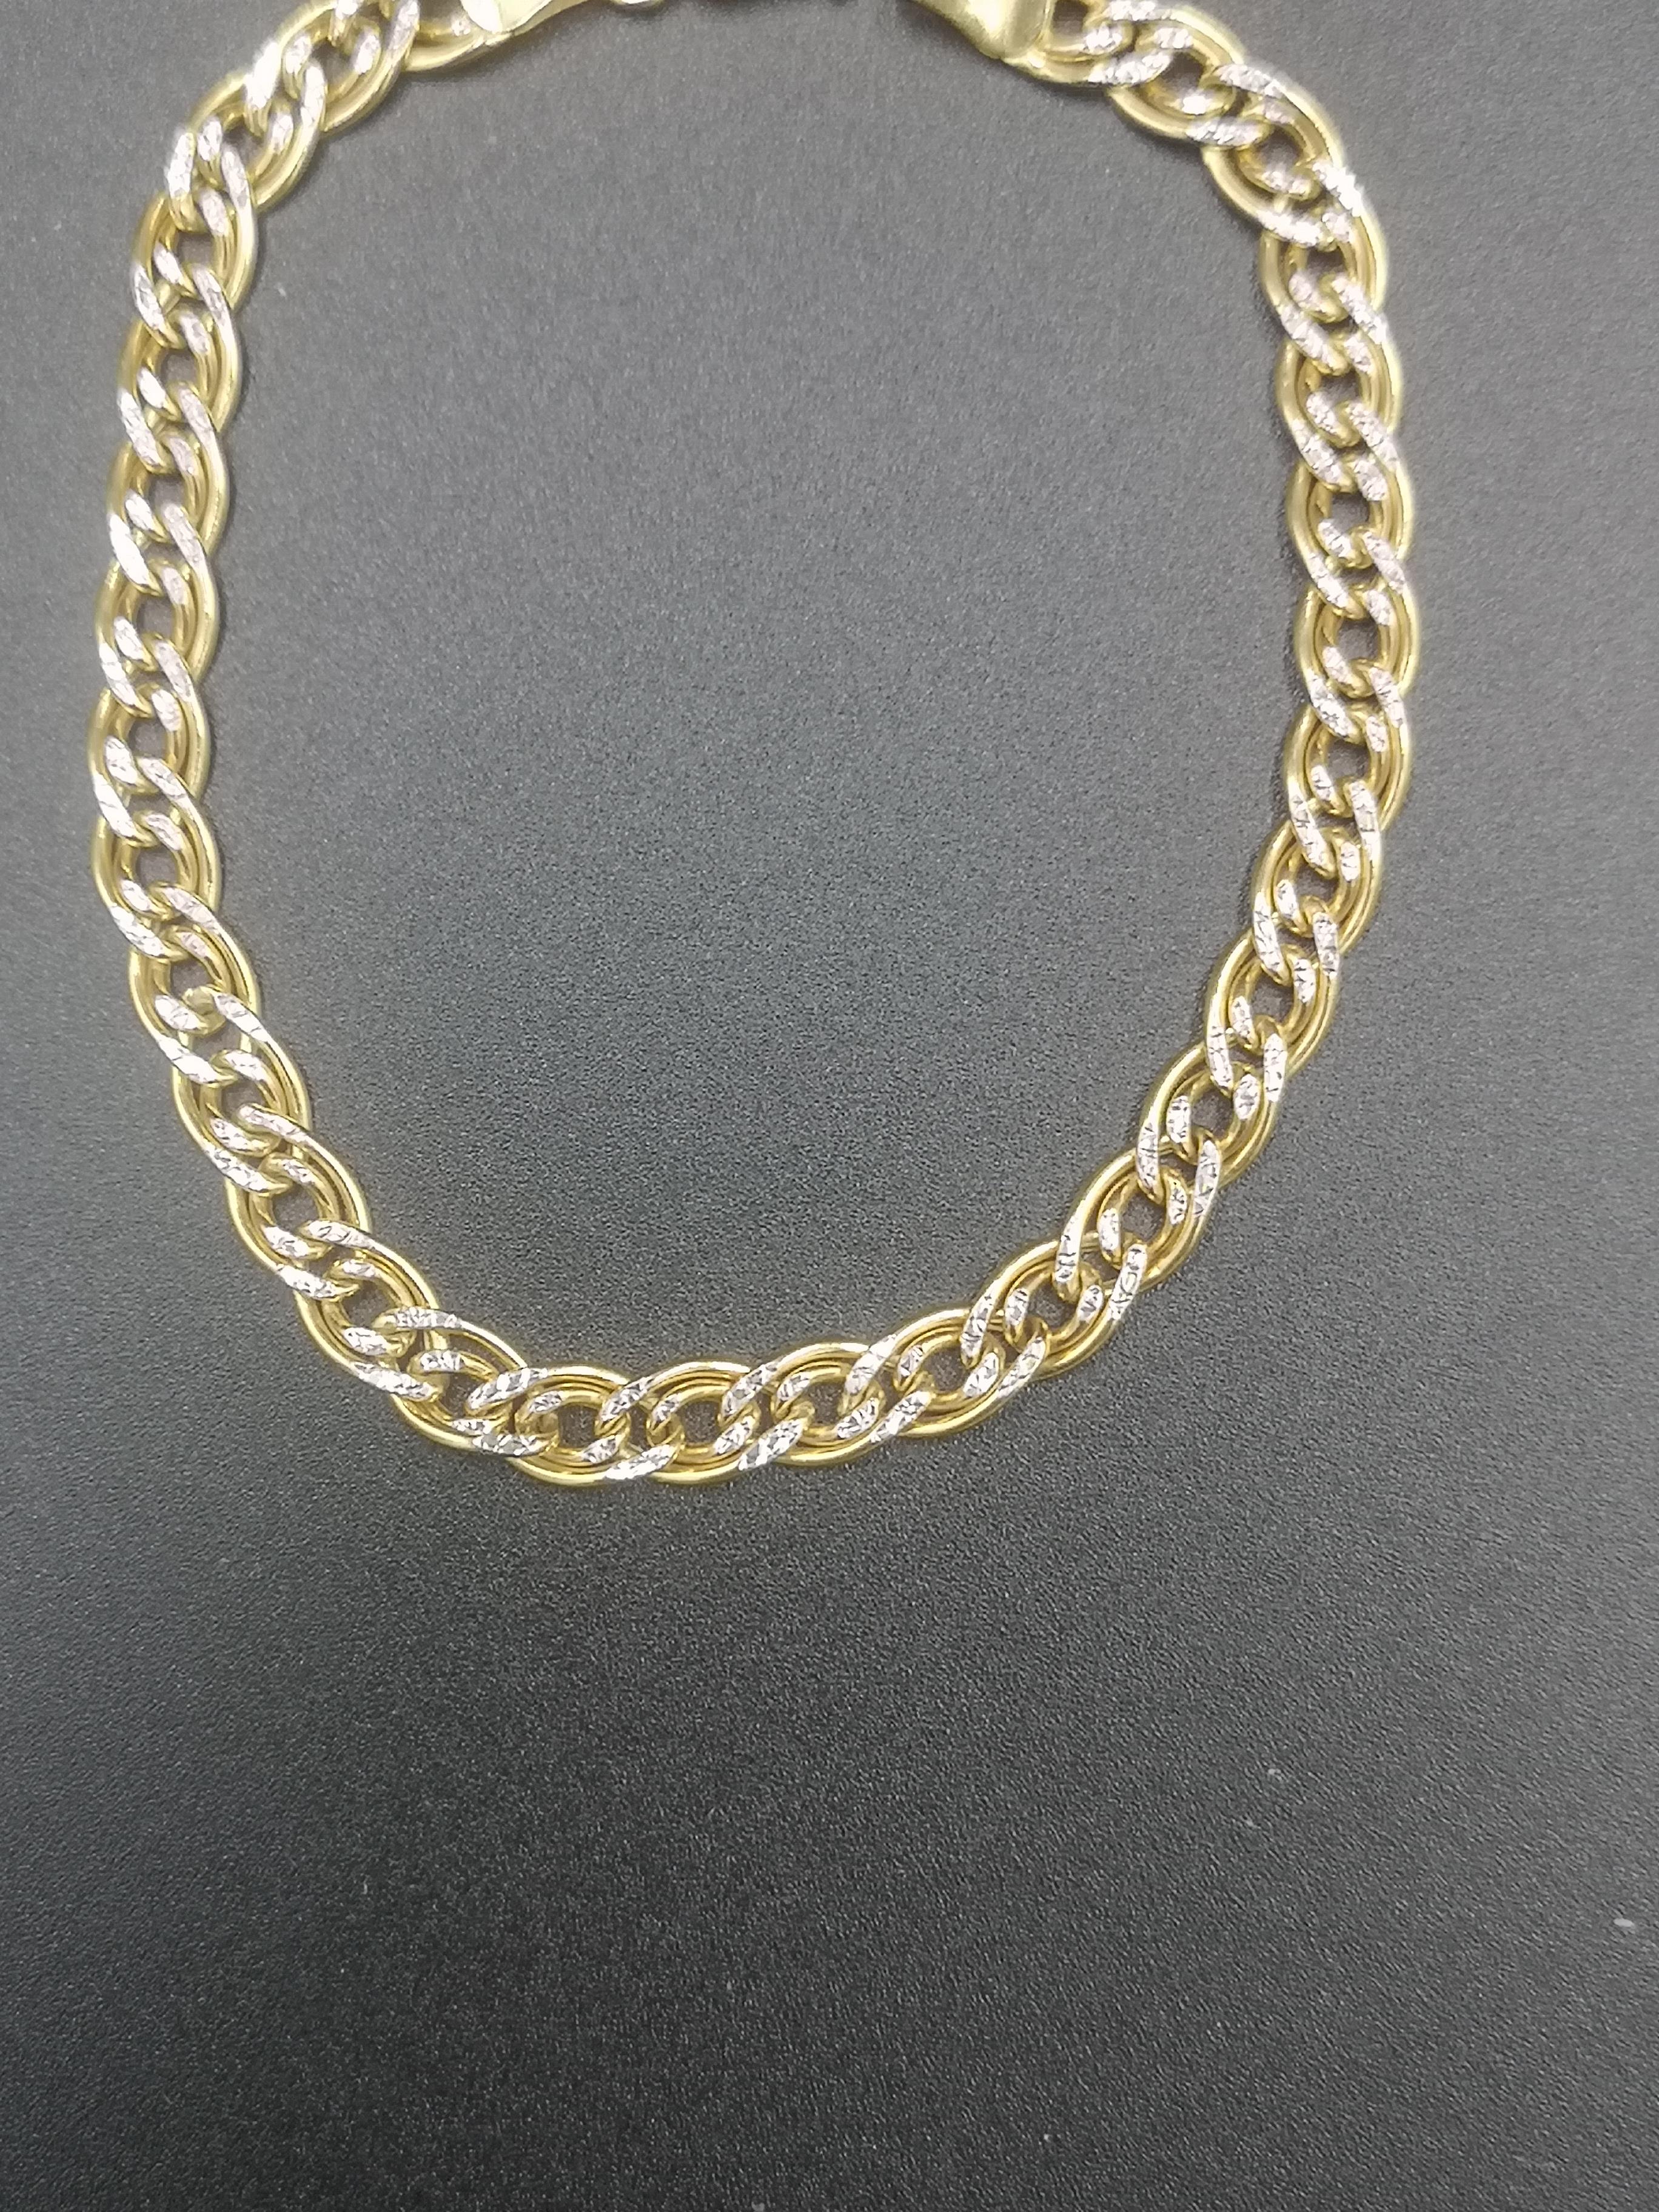 9ct gold curb link bracelet - Image 3 of 4